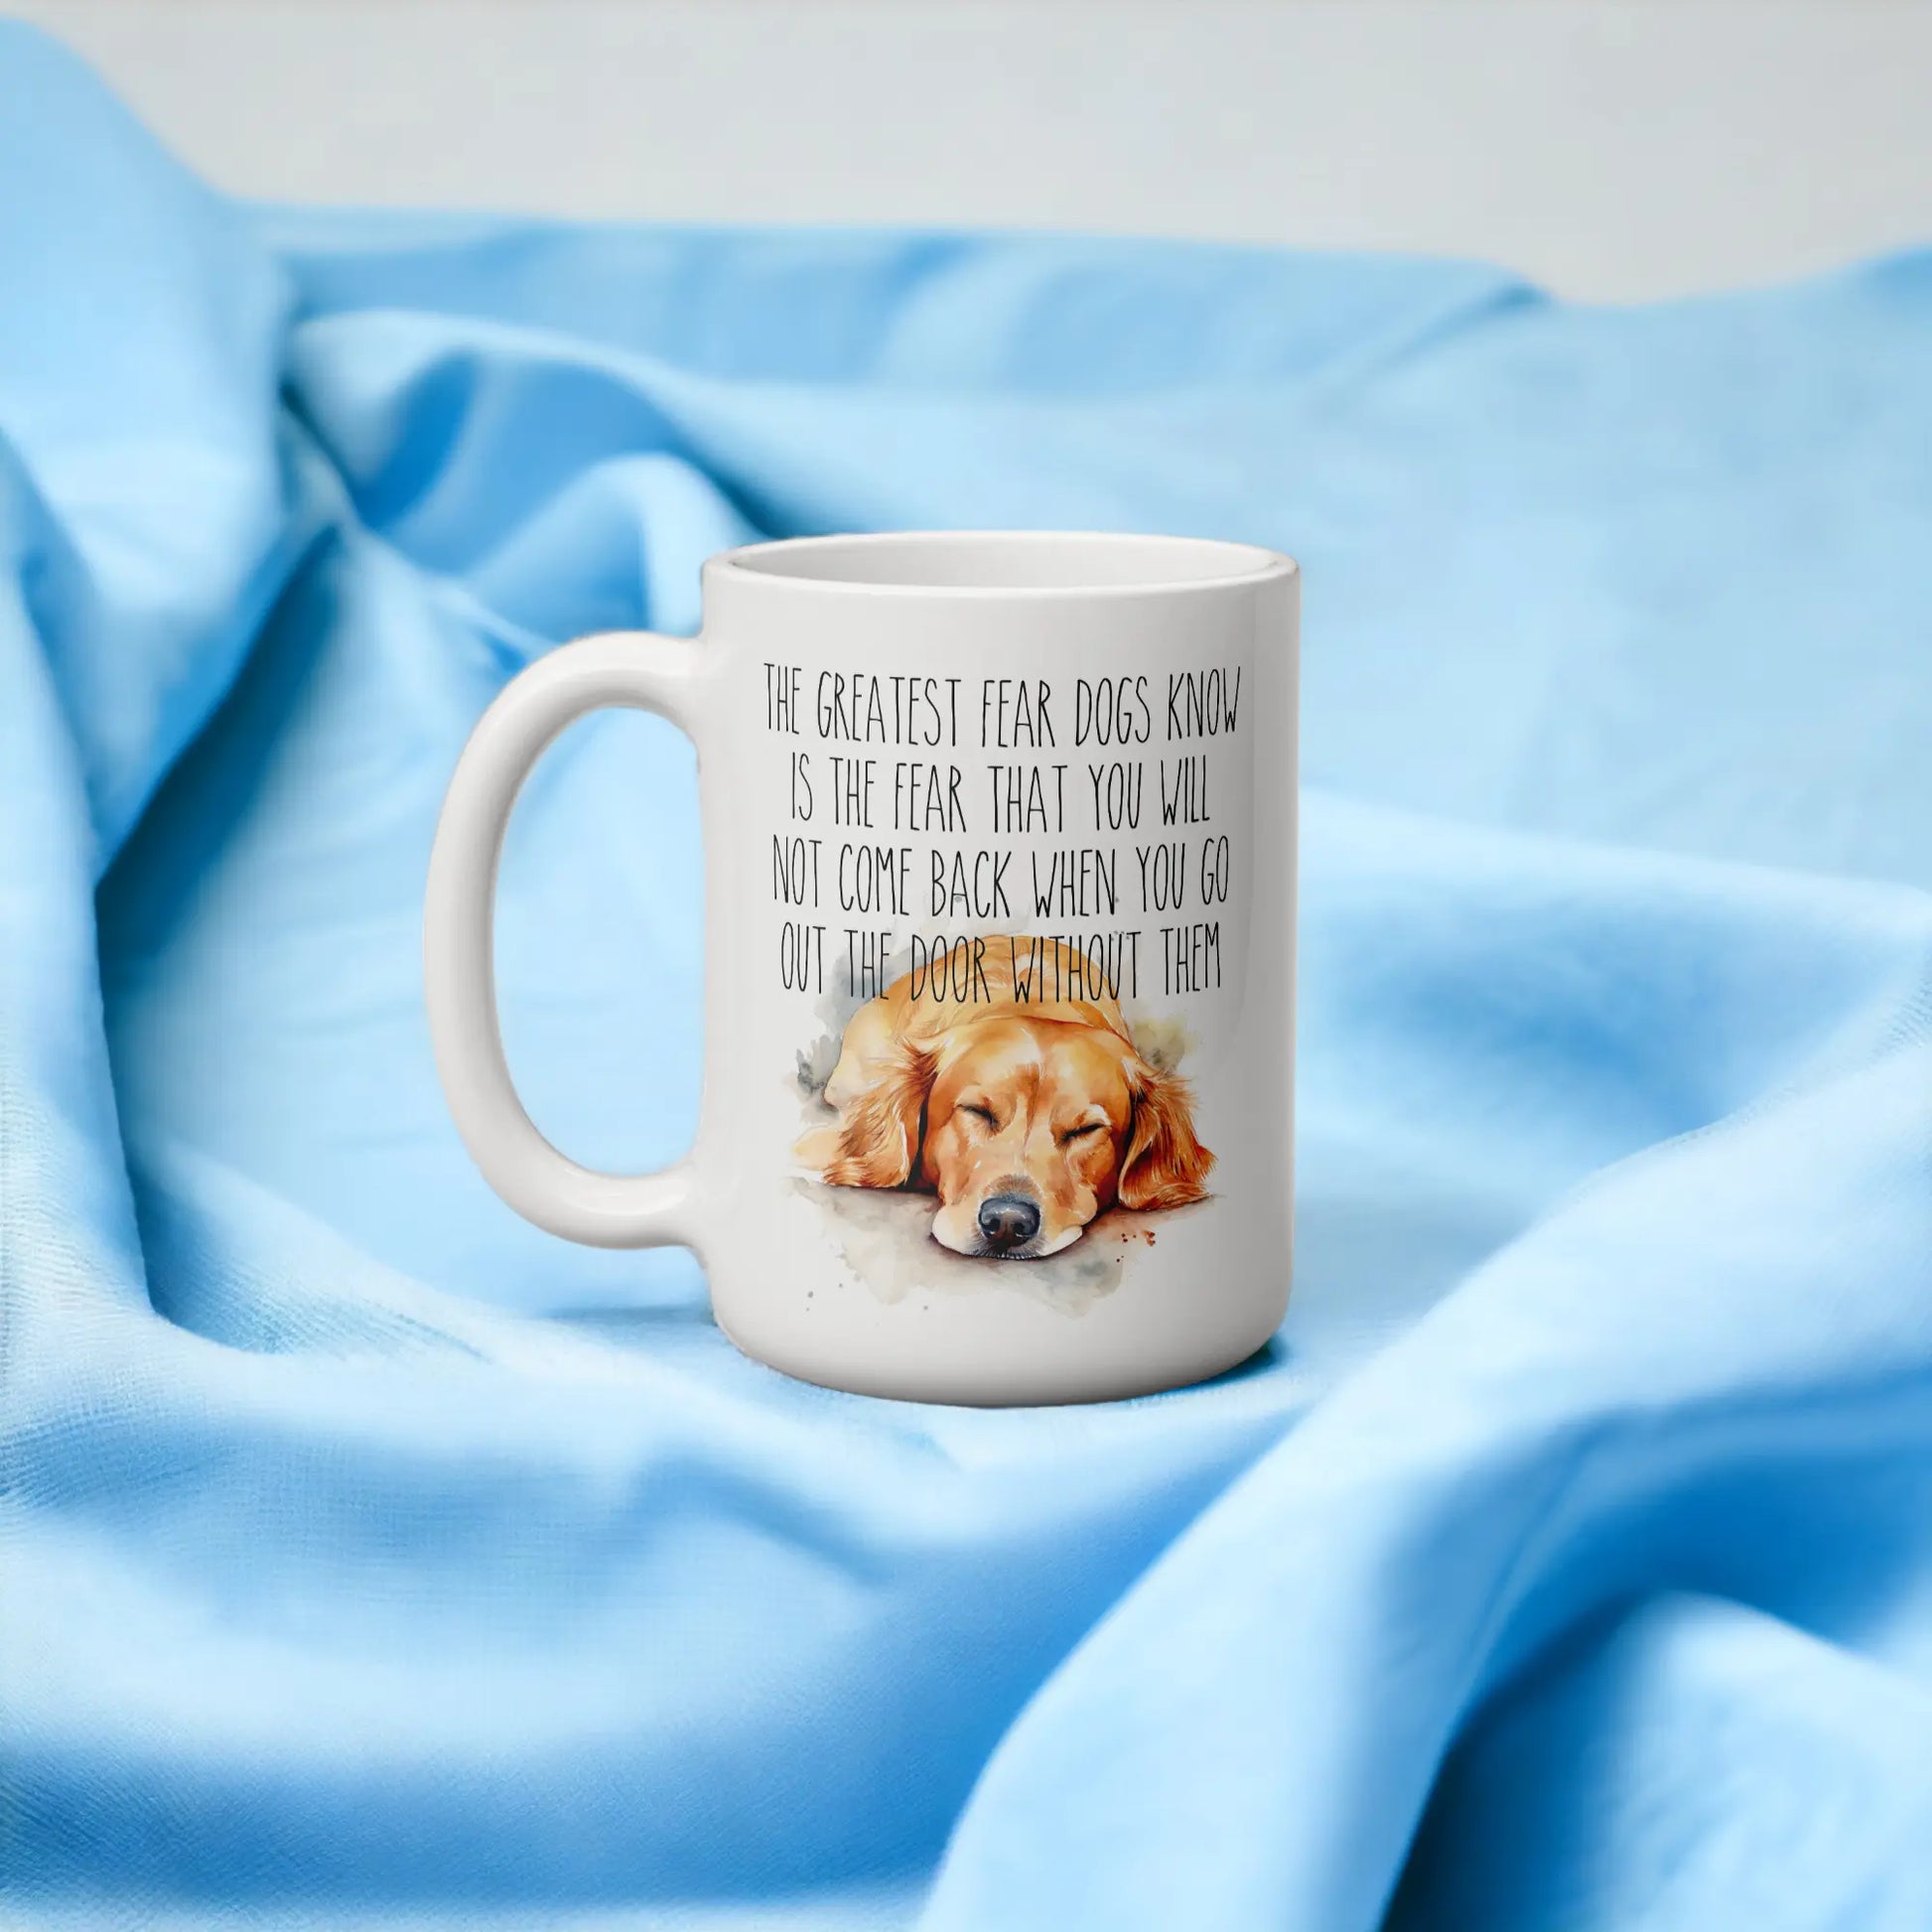  A Dogs Greatest Fear Coffee Mug by Free Spirit Accessories sold by Free Spirit Accessories